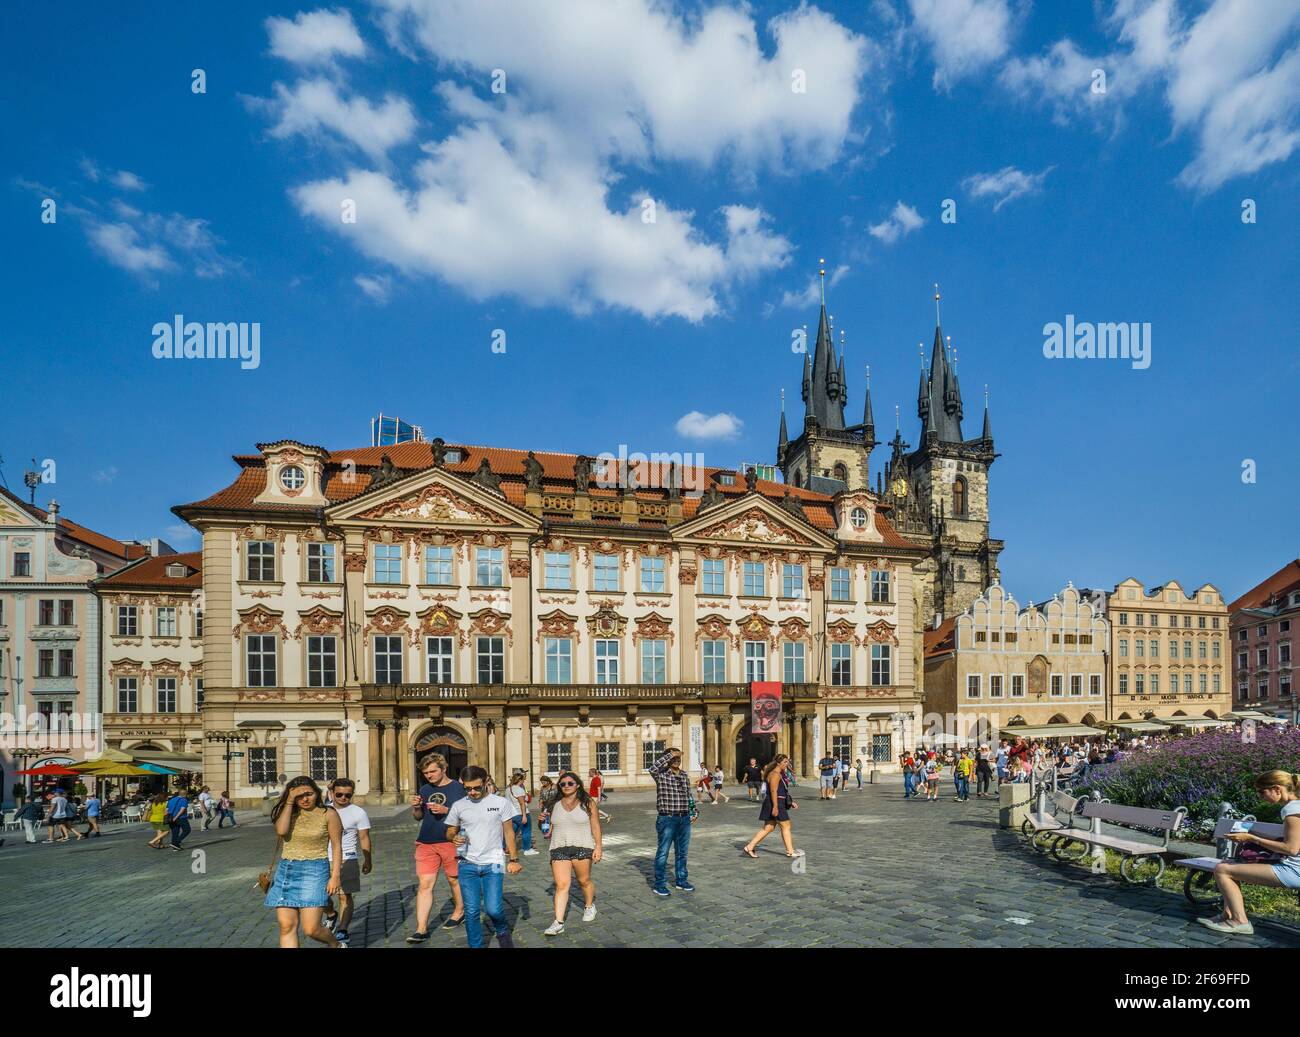 Kinský-Palast am Altstädter Ring, Hauptstadt von Prag, Tschechische Republik Stockfoto